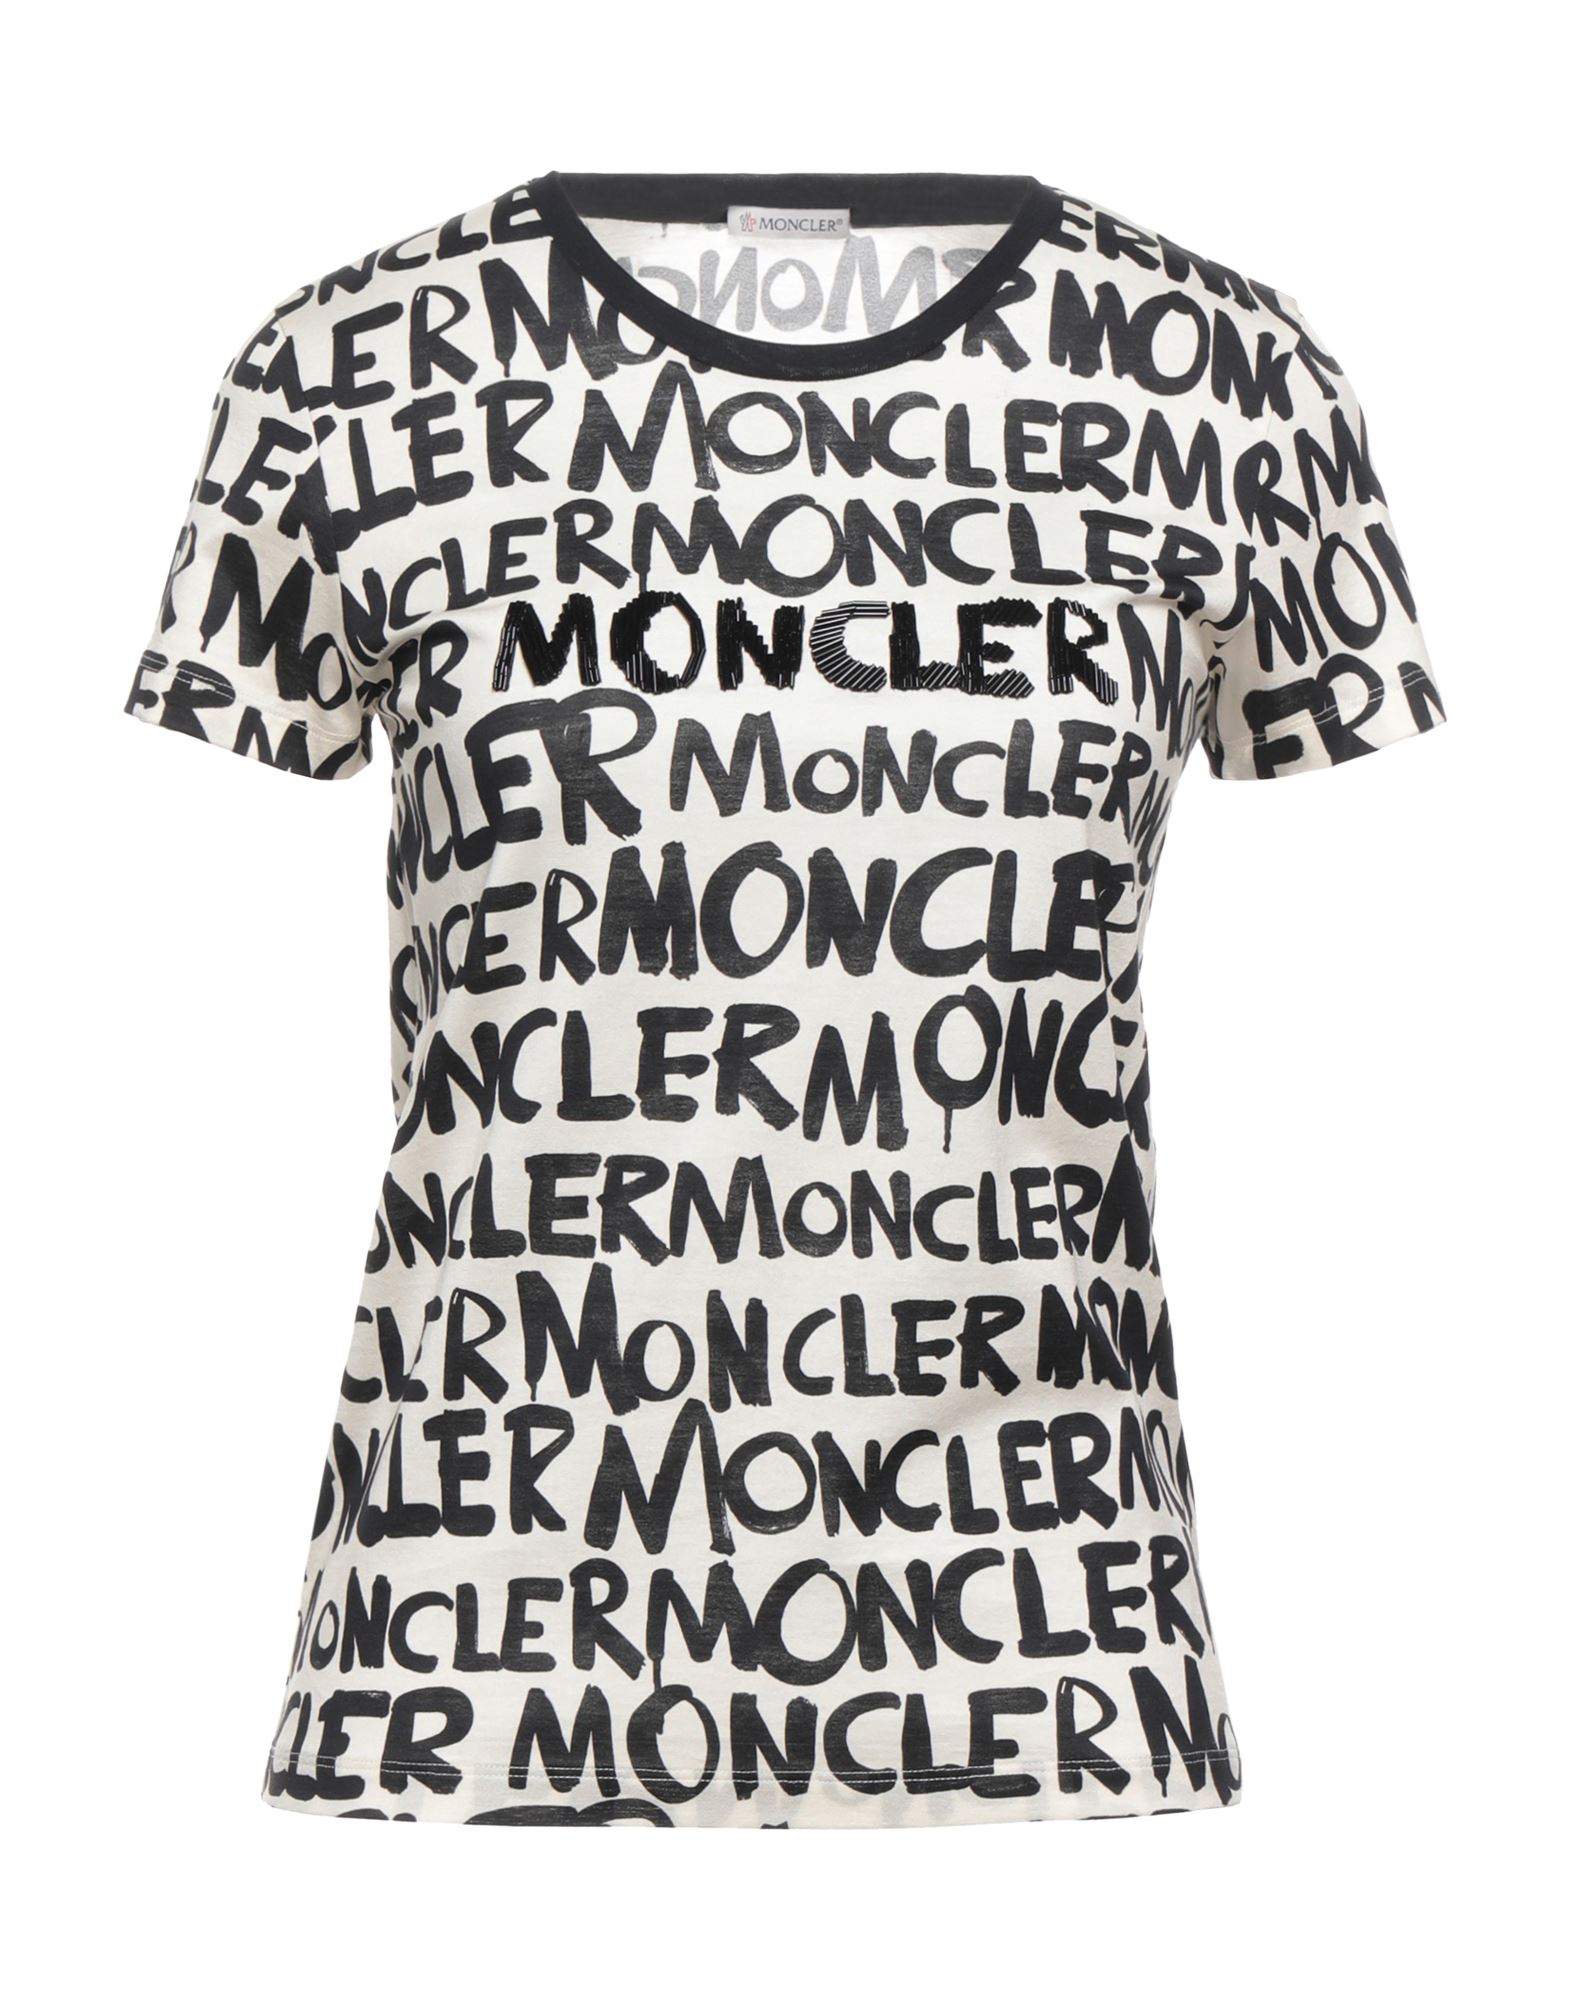 【楽天スーパーセール】 moncler Tシャツ レディース Tシャツ/カットソー(半袖/袖なし)